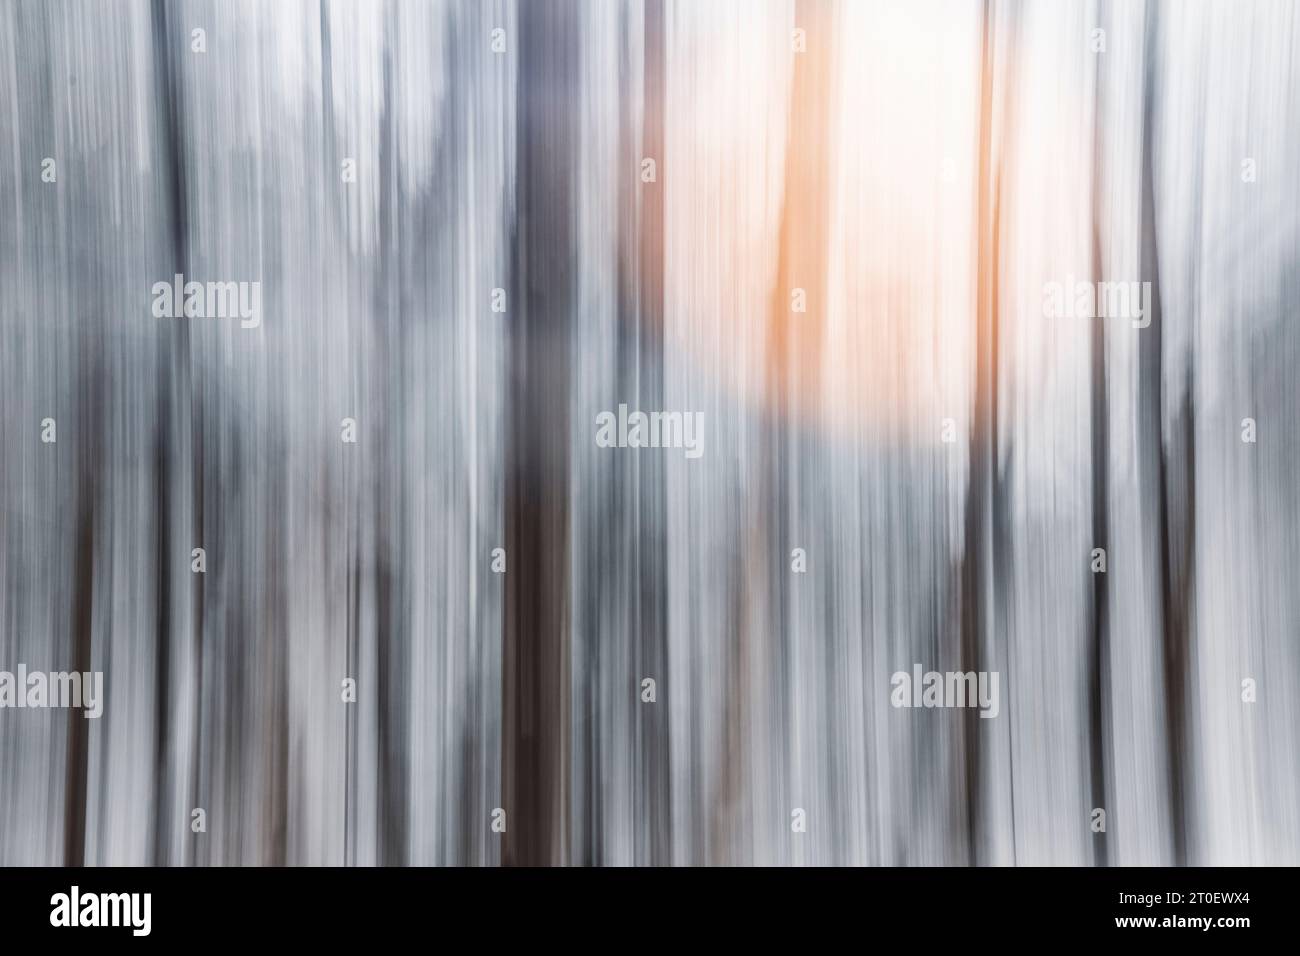 Italia, Veneto, provincia di Belluno, Dolomiti, immagine astratta di una foresta decidua in inverno con neve e una sorgente luminosa sullo sfondo Foto Stock